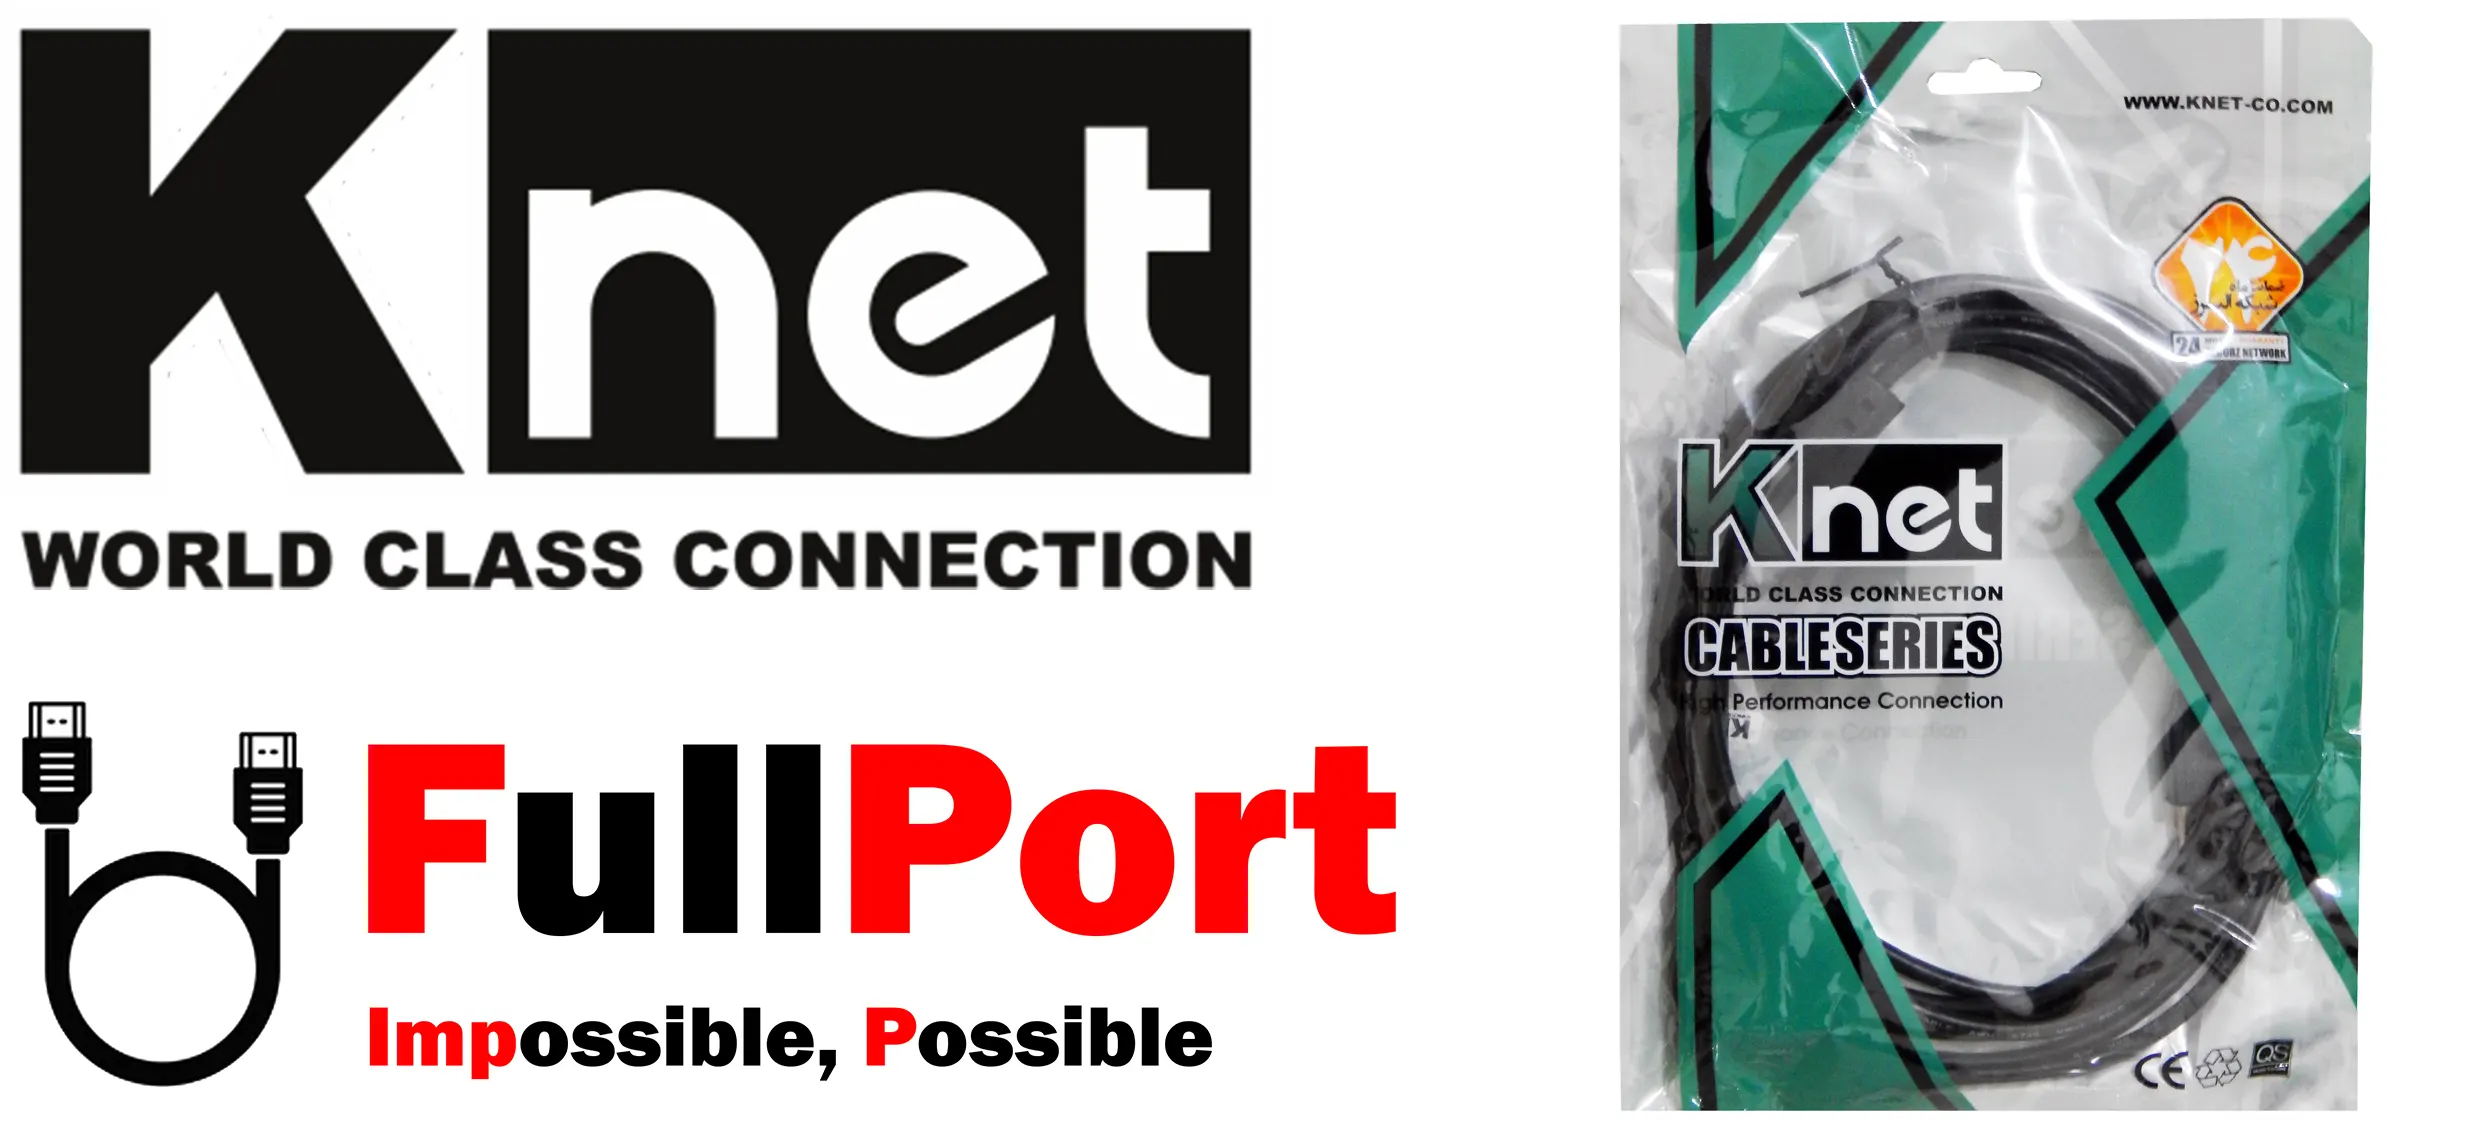 مشاهده قیمت و خرید کابل افزایش طول USB2.0 برند کی نت مدل K-NET زیر قیمت بازار با ارسال سریع و ایمن با گارانتی شبکه البرز